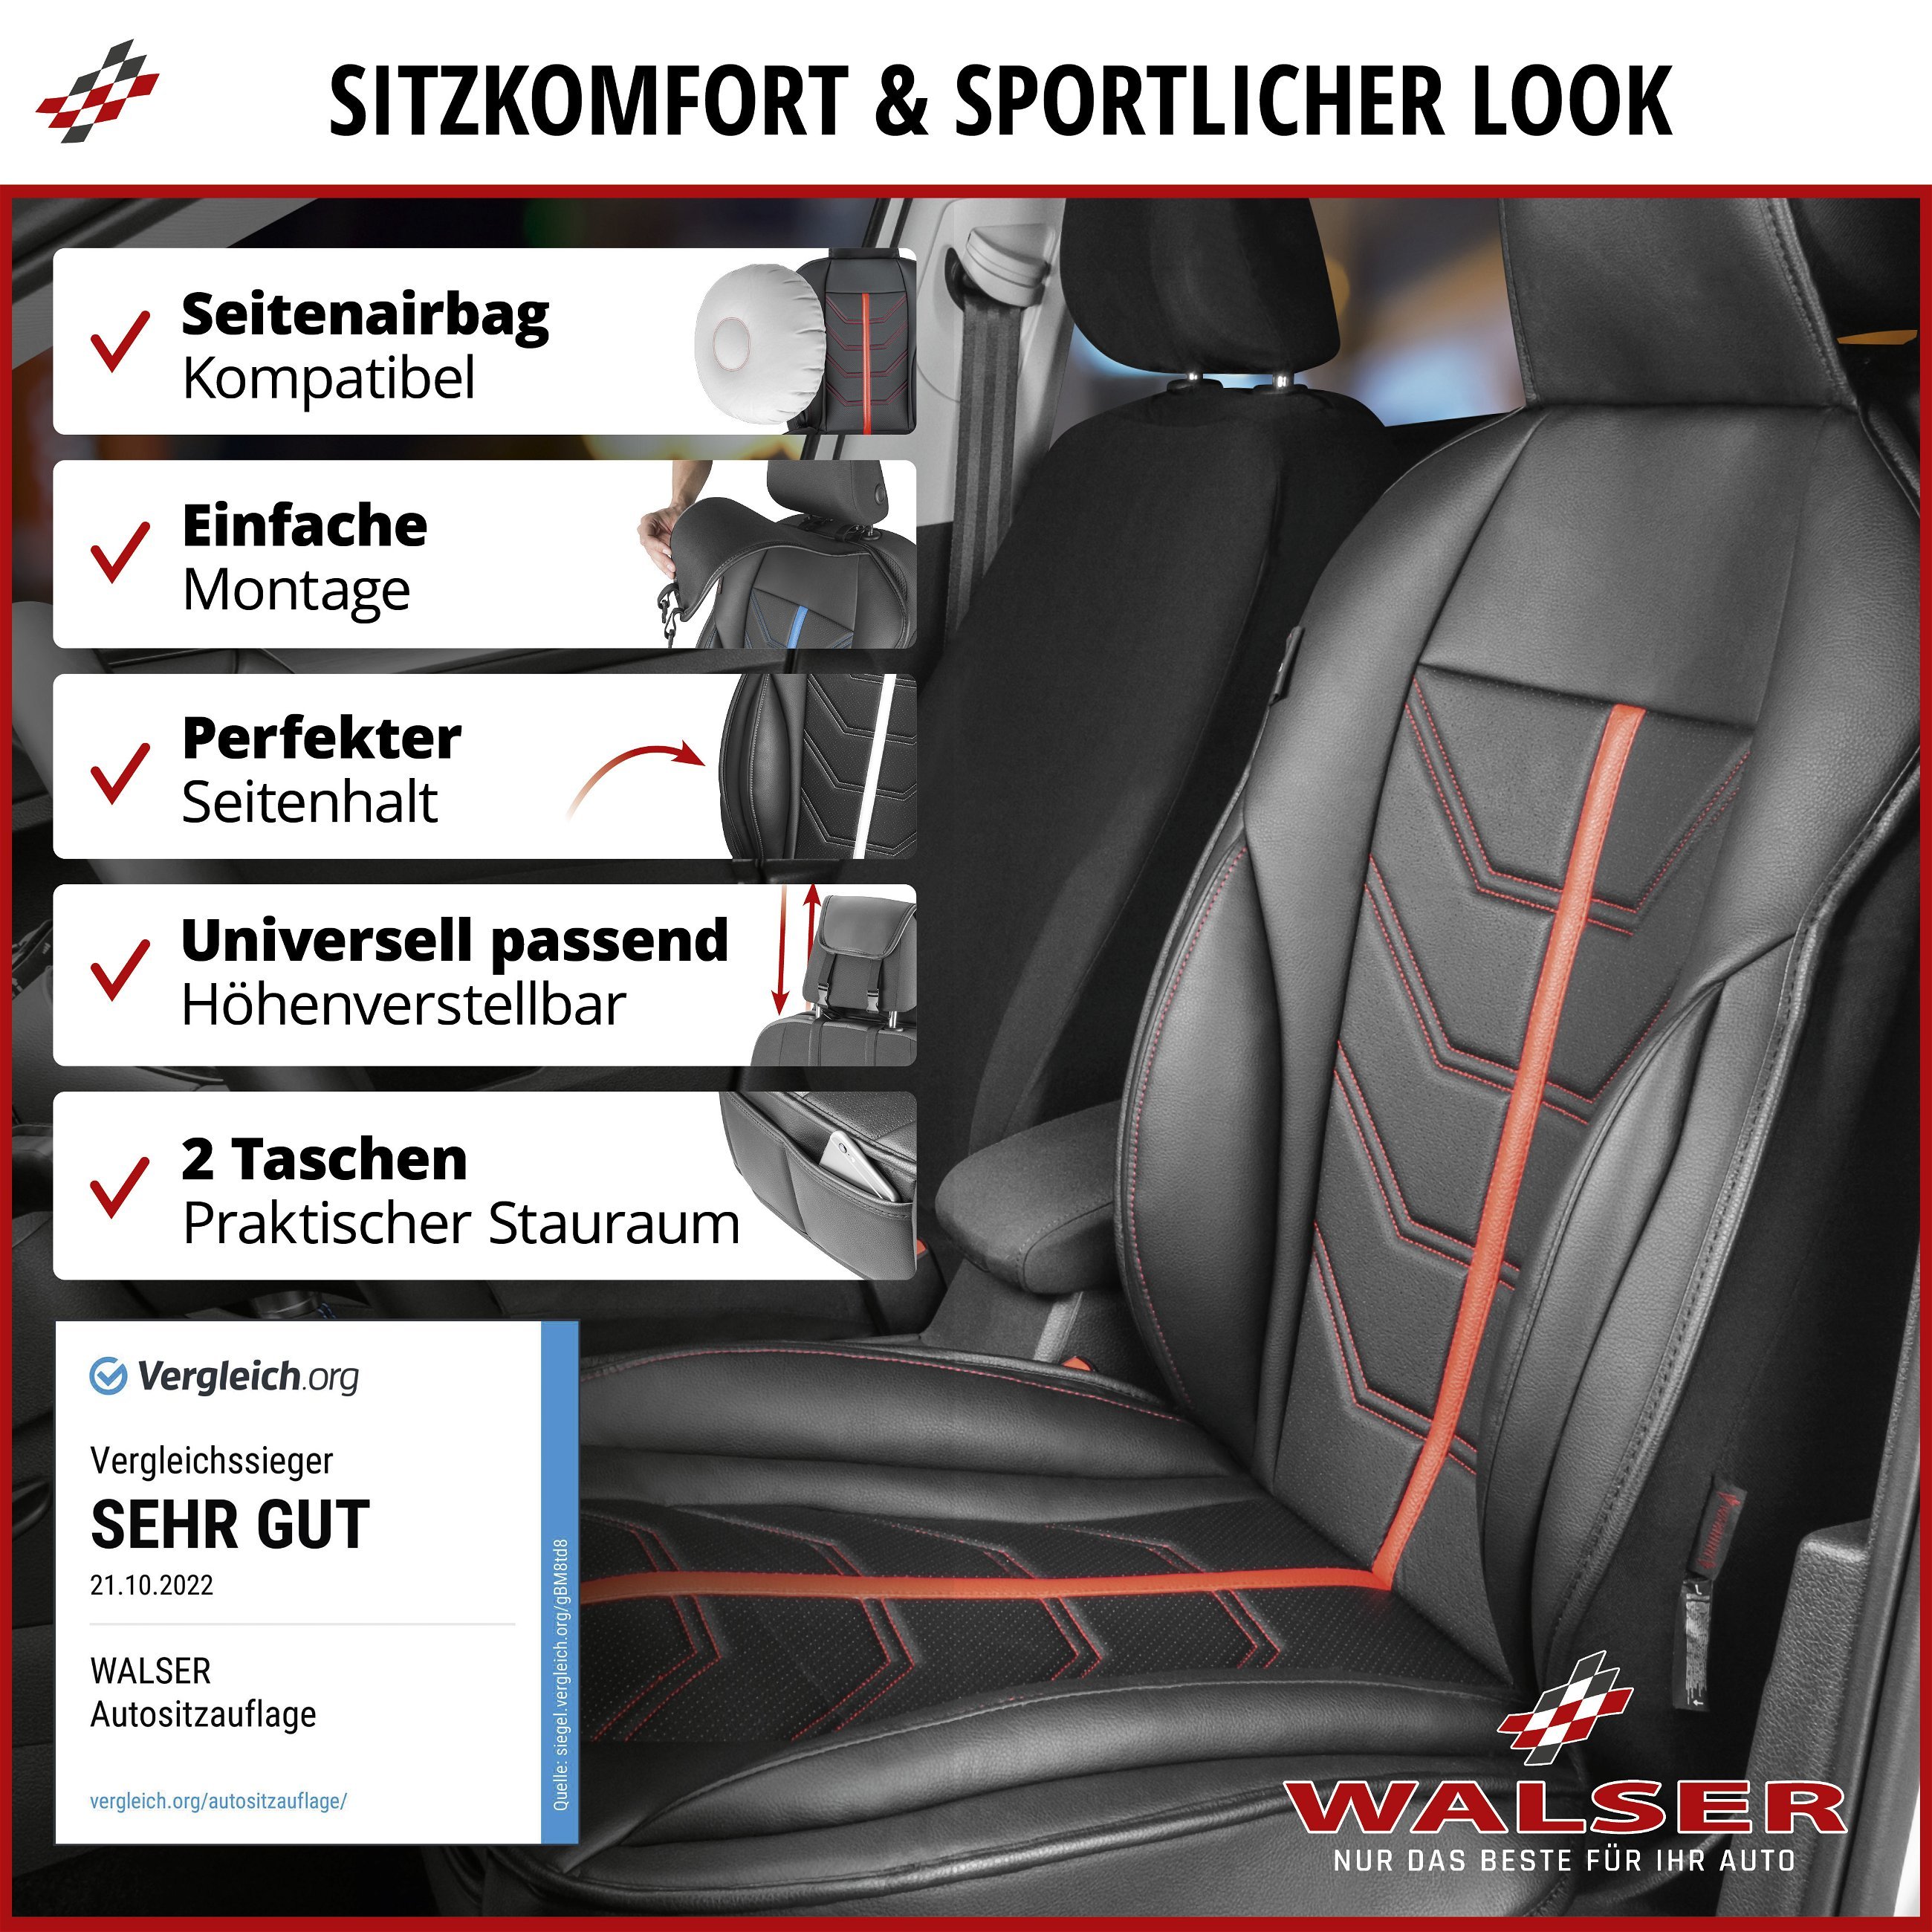 PKW Sitzauflage Kimi, Auto-Sitzaufleger im Rennsportdesign schwarz/rot